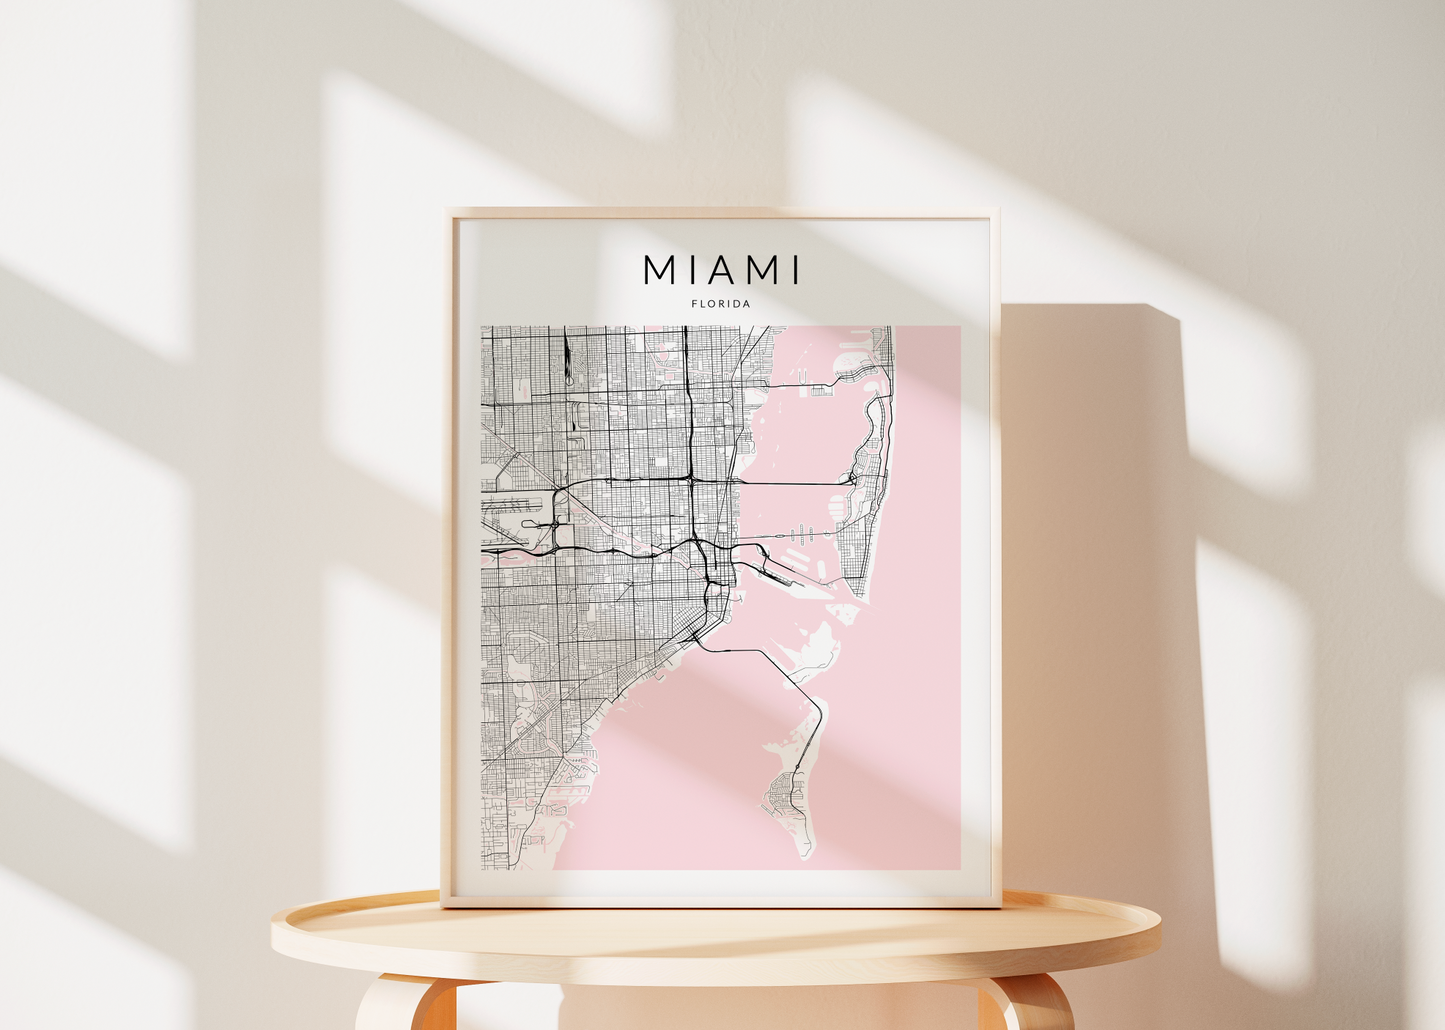 Miami Minimalist Map Print